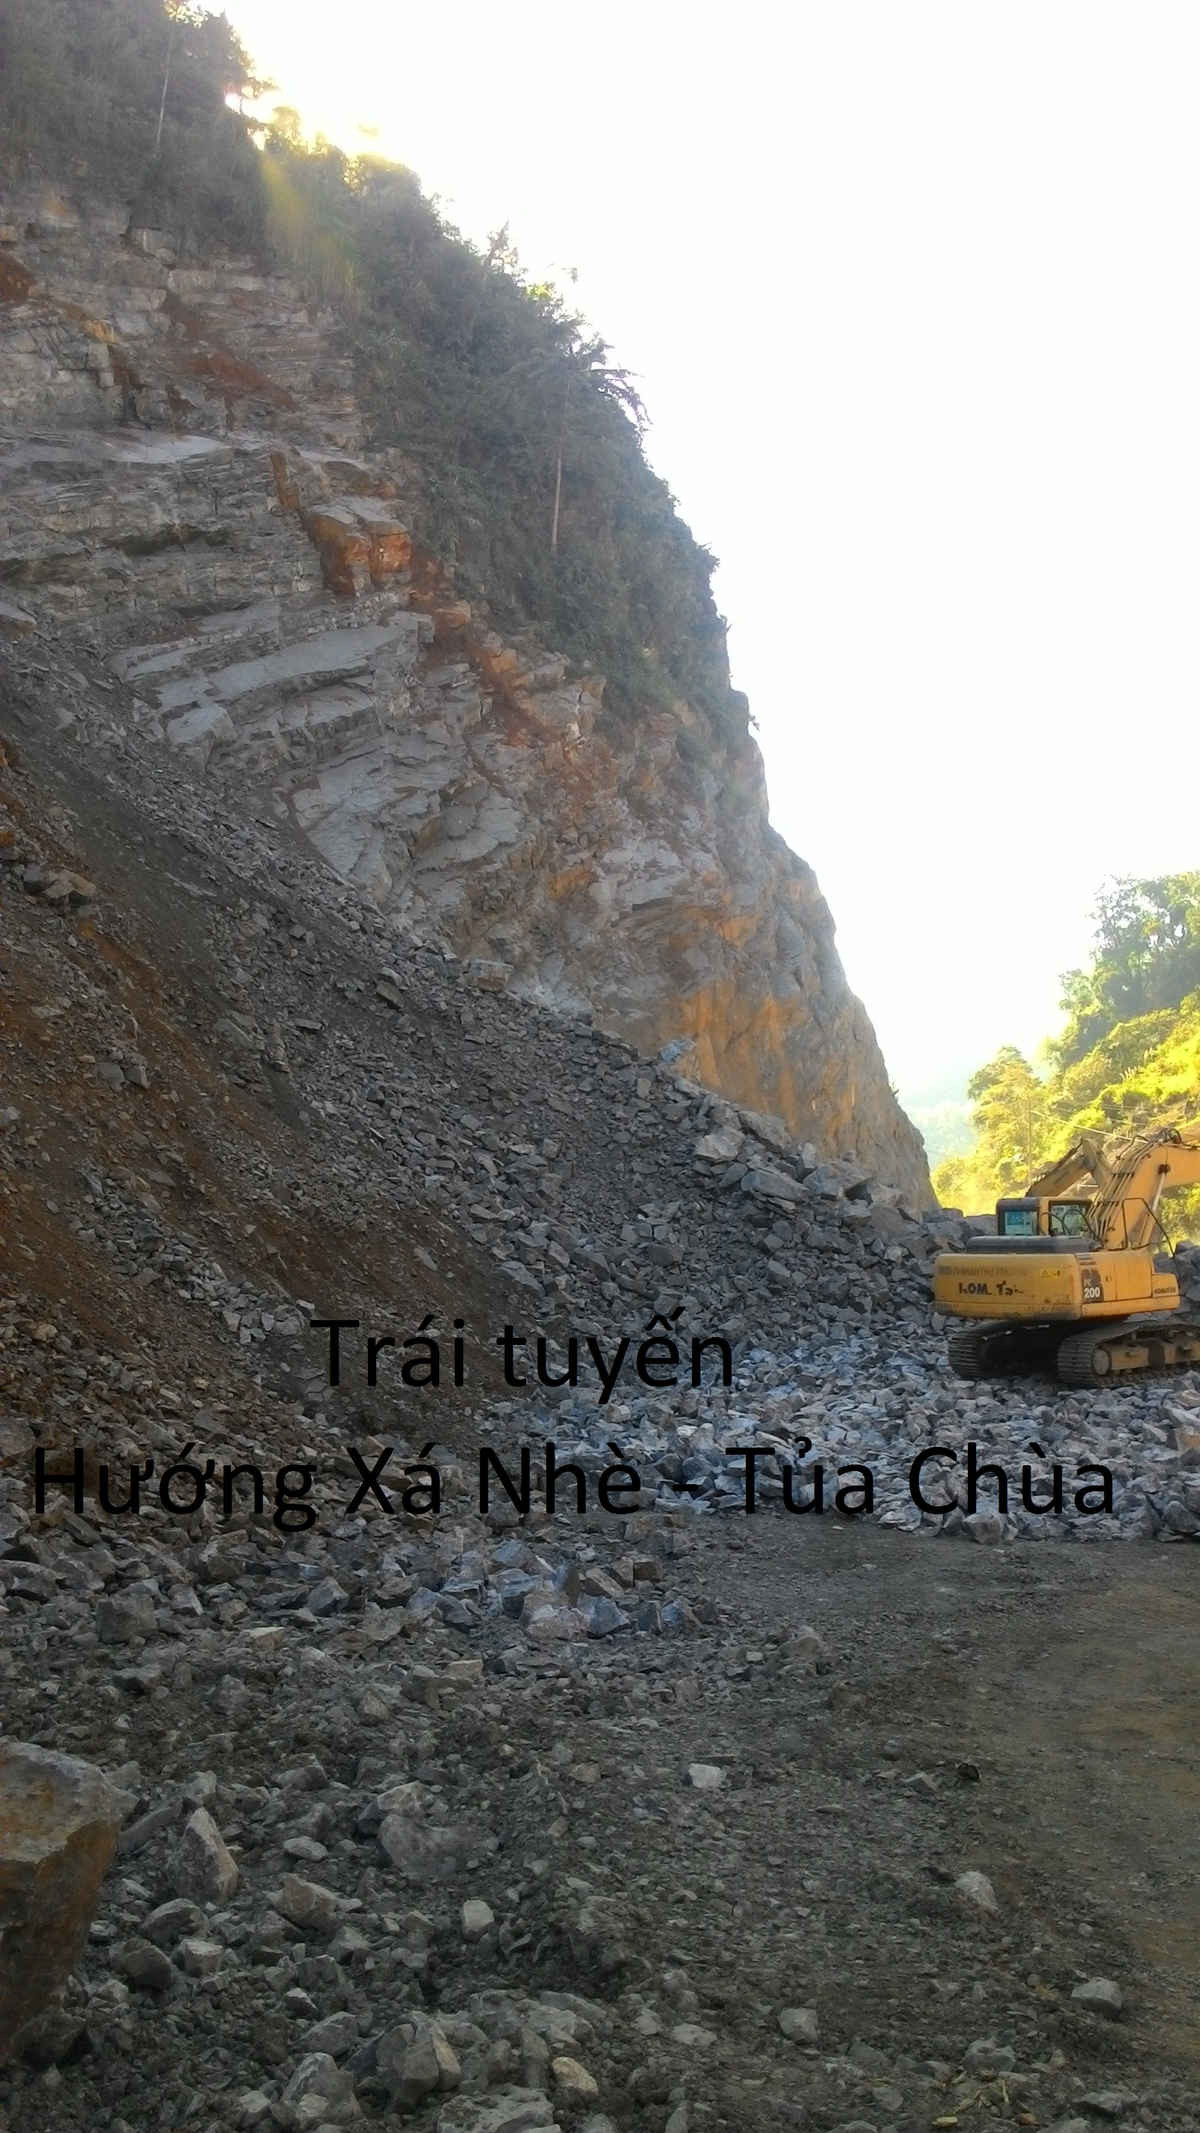 Mỏ đá khai thác trái phép của bà Bùi Thị Tấm, tại km9, đường liên xã Mường Báng - Xá Nhè, huyện Tủa Chùa